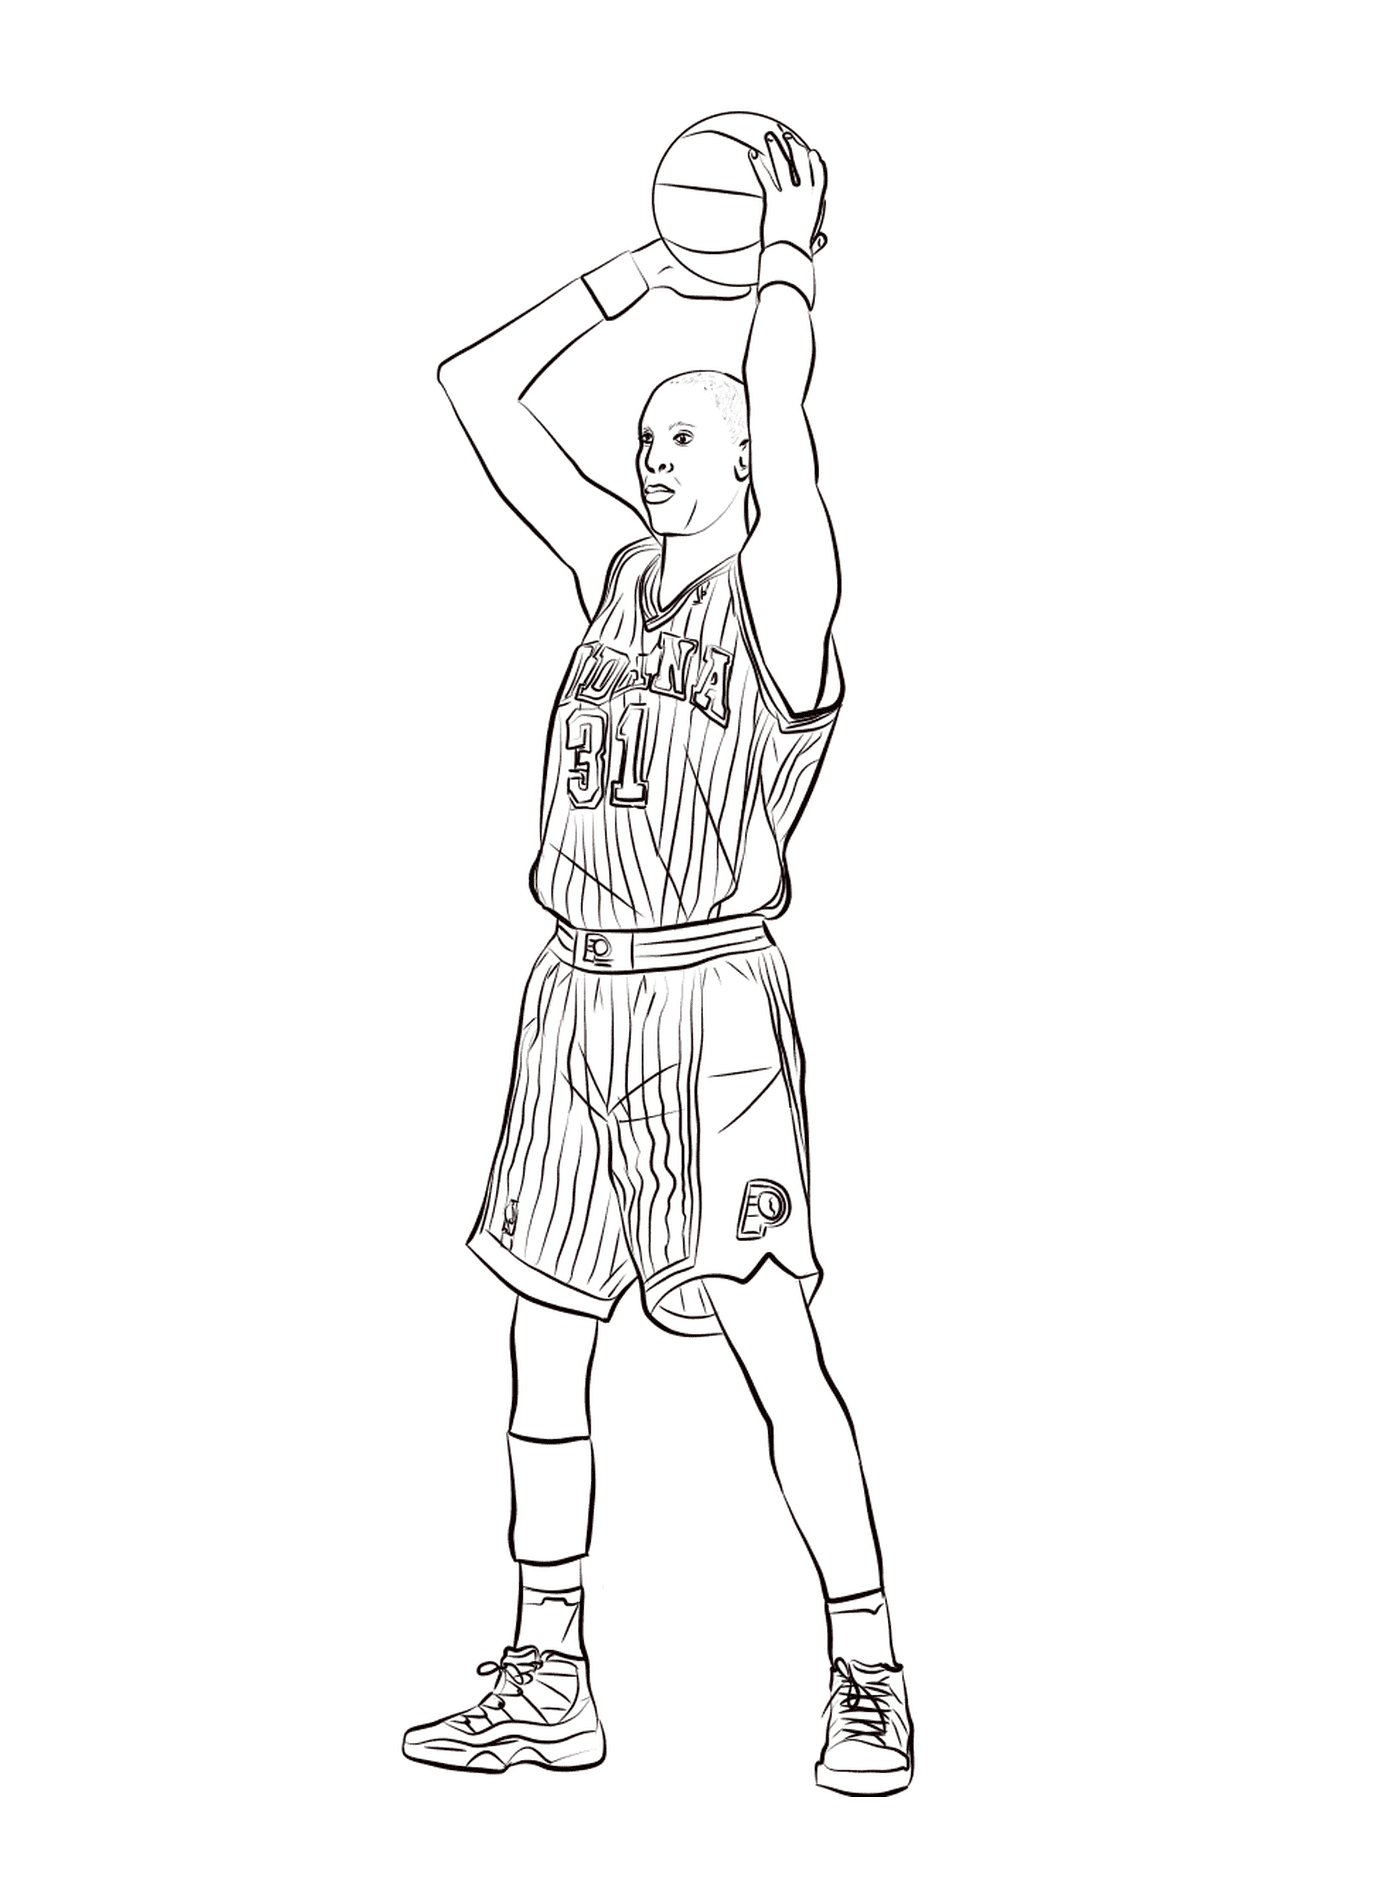  Реджи Миллер держит баскетбольный мяч 